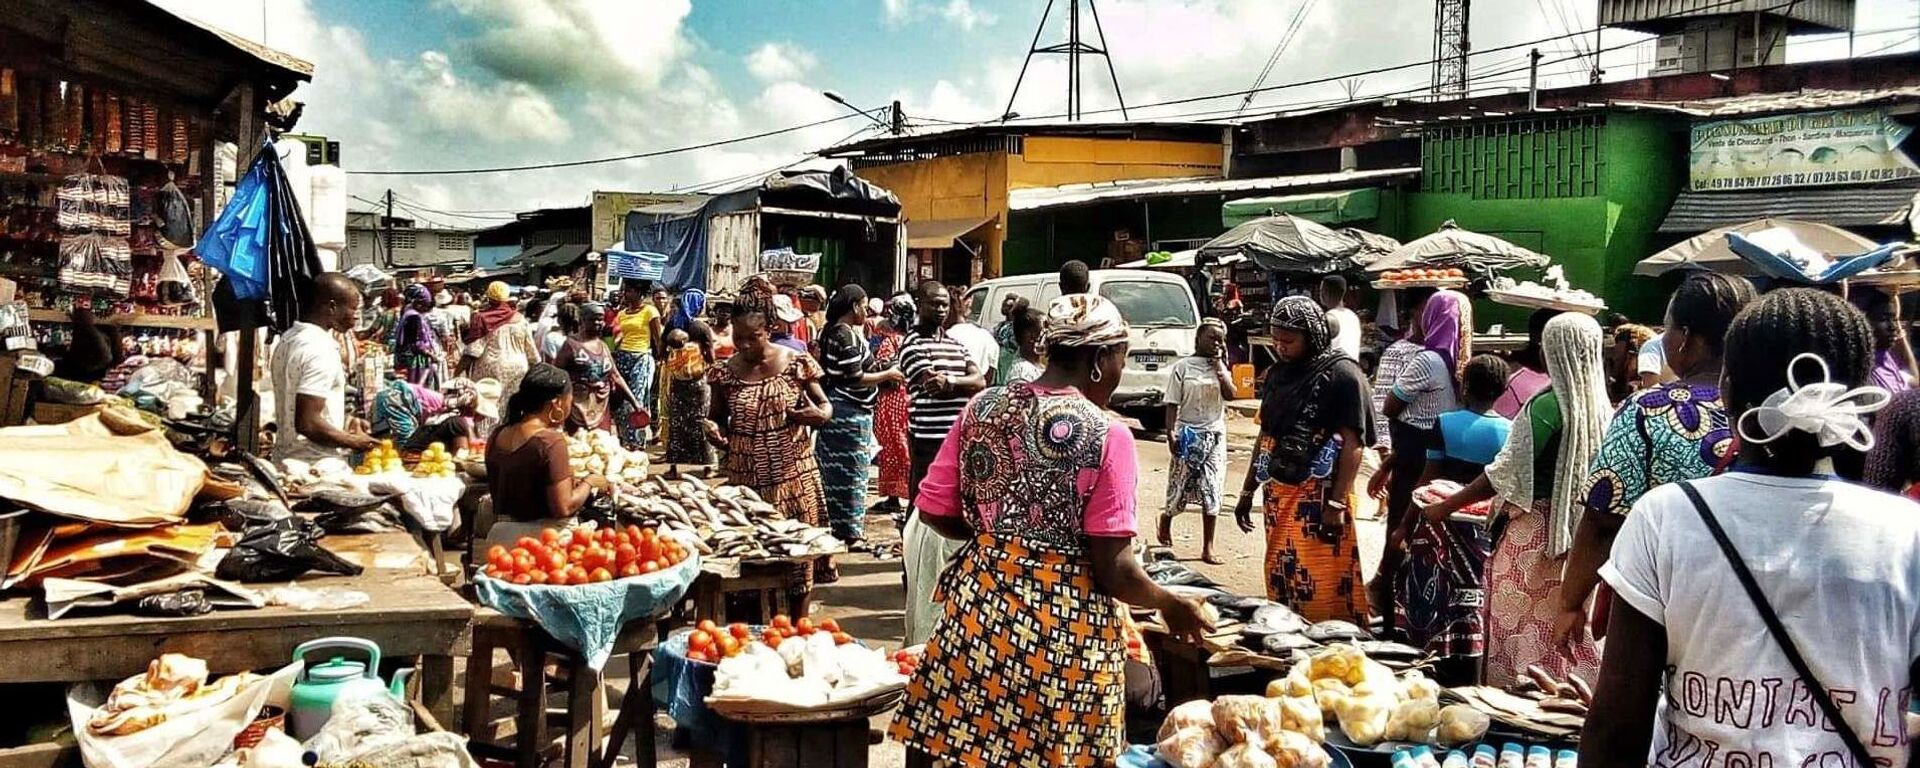 Des femmes au marché d’Abobo, à Abidjan. - Sputnik Afrique, 1920, 10.12.2019